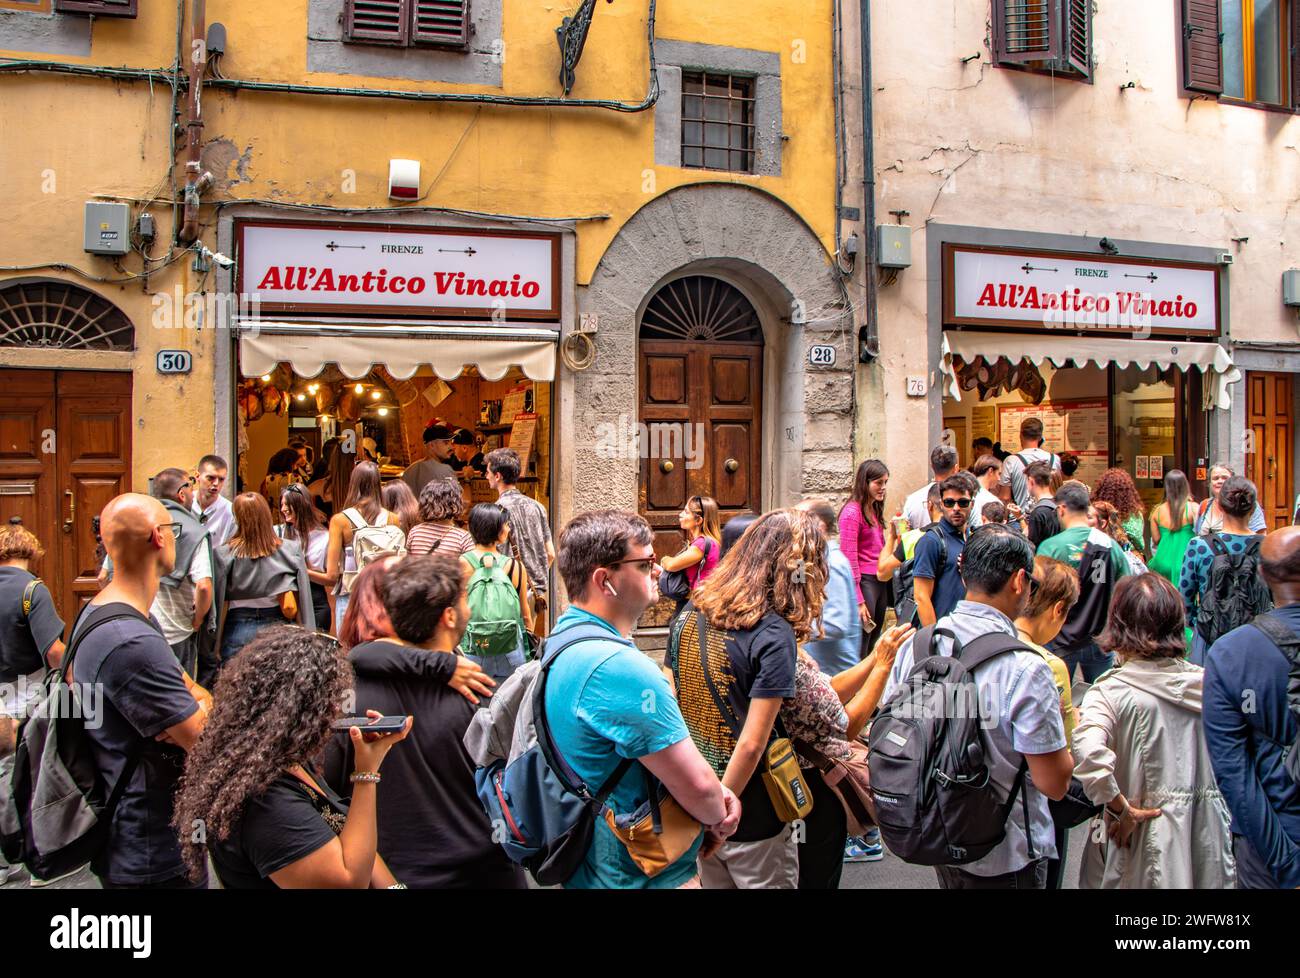 Foules de gens faisant la queue devant All'Antico Vinaio , un panini italien bien connu et sandwicherie sur la via dei Neri, Florence, Italie Banque D'Images